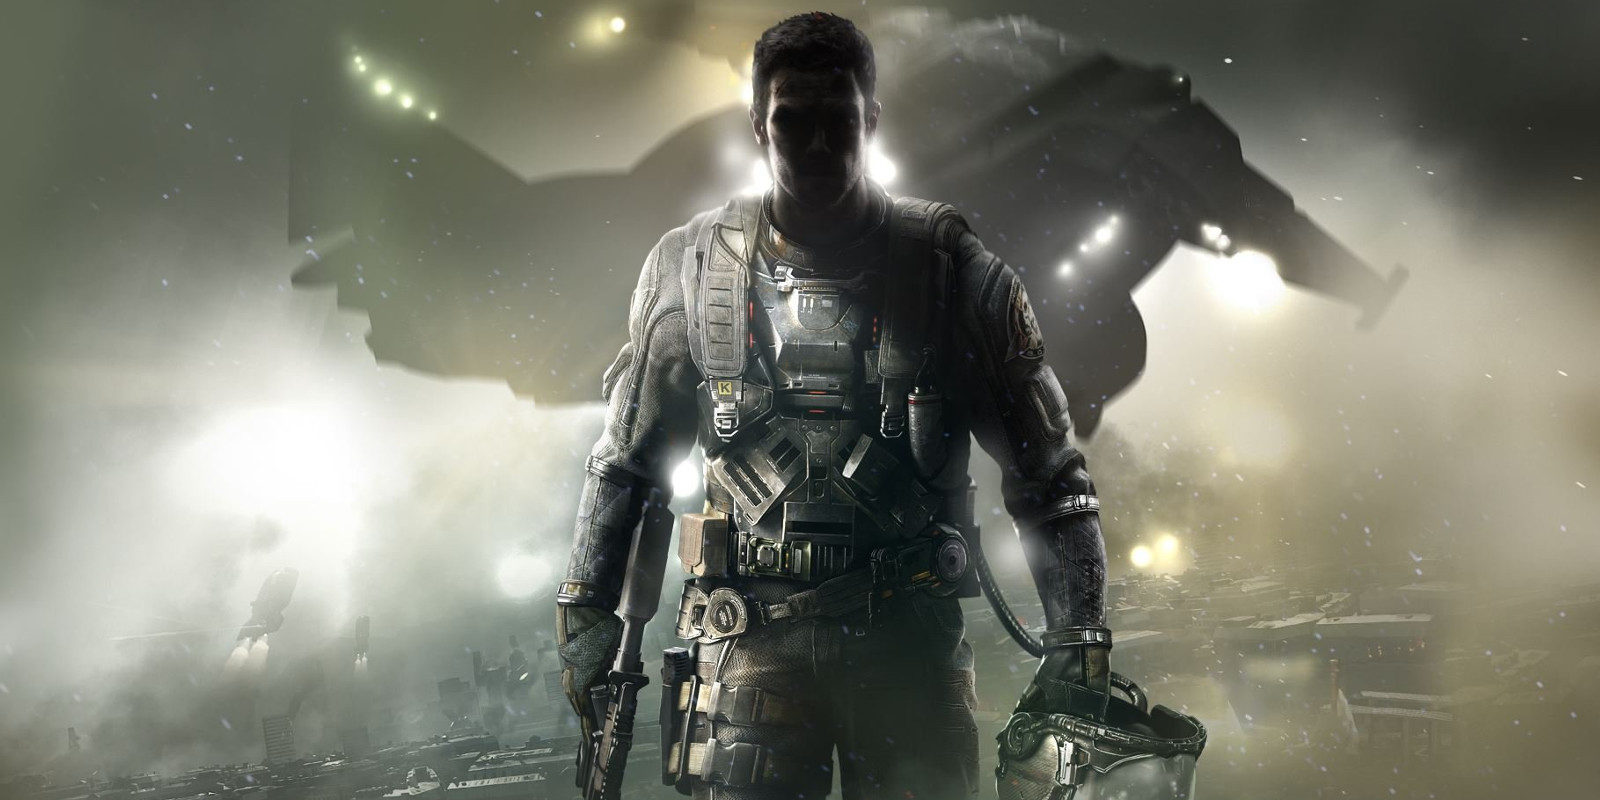 Las ventas de 'Call of Duty: Infinite Warfare' caen casi un 50% respecto a 'Black Ops III'